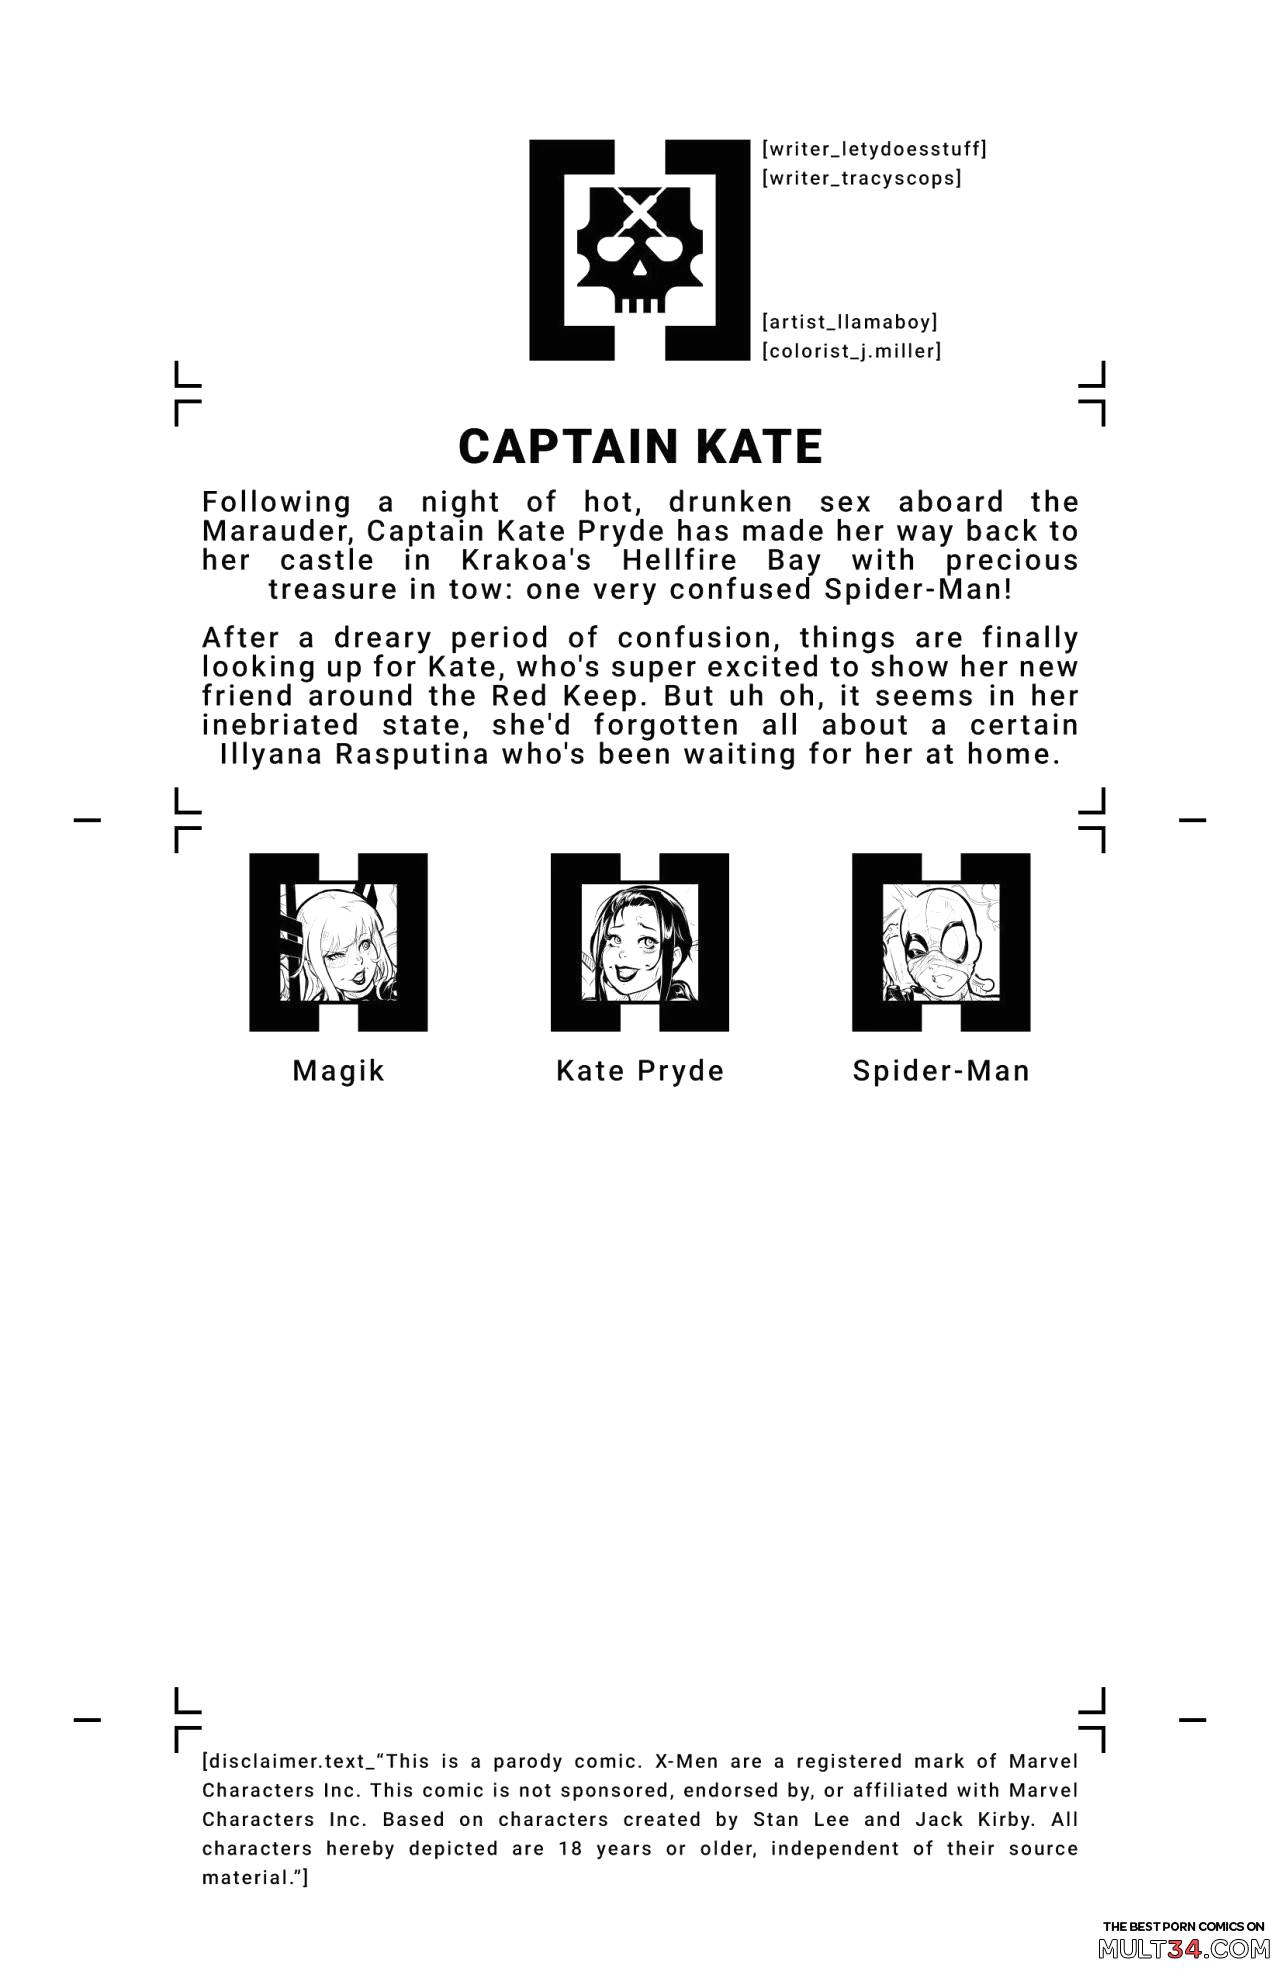 Xxx Kote - House Of XXX - Captain Kate 2 porn comic - the best cartoon porn comics,  Rule 34 | MULT34